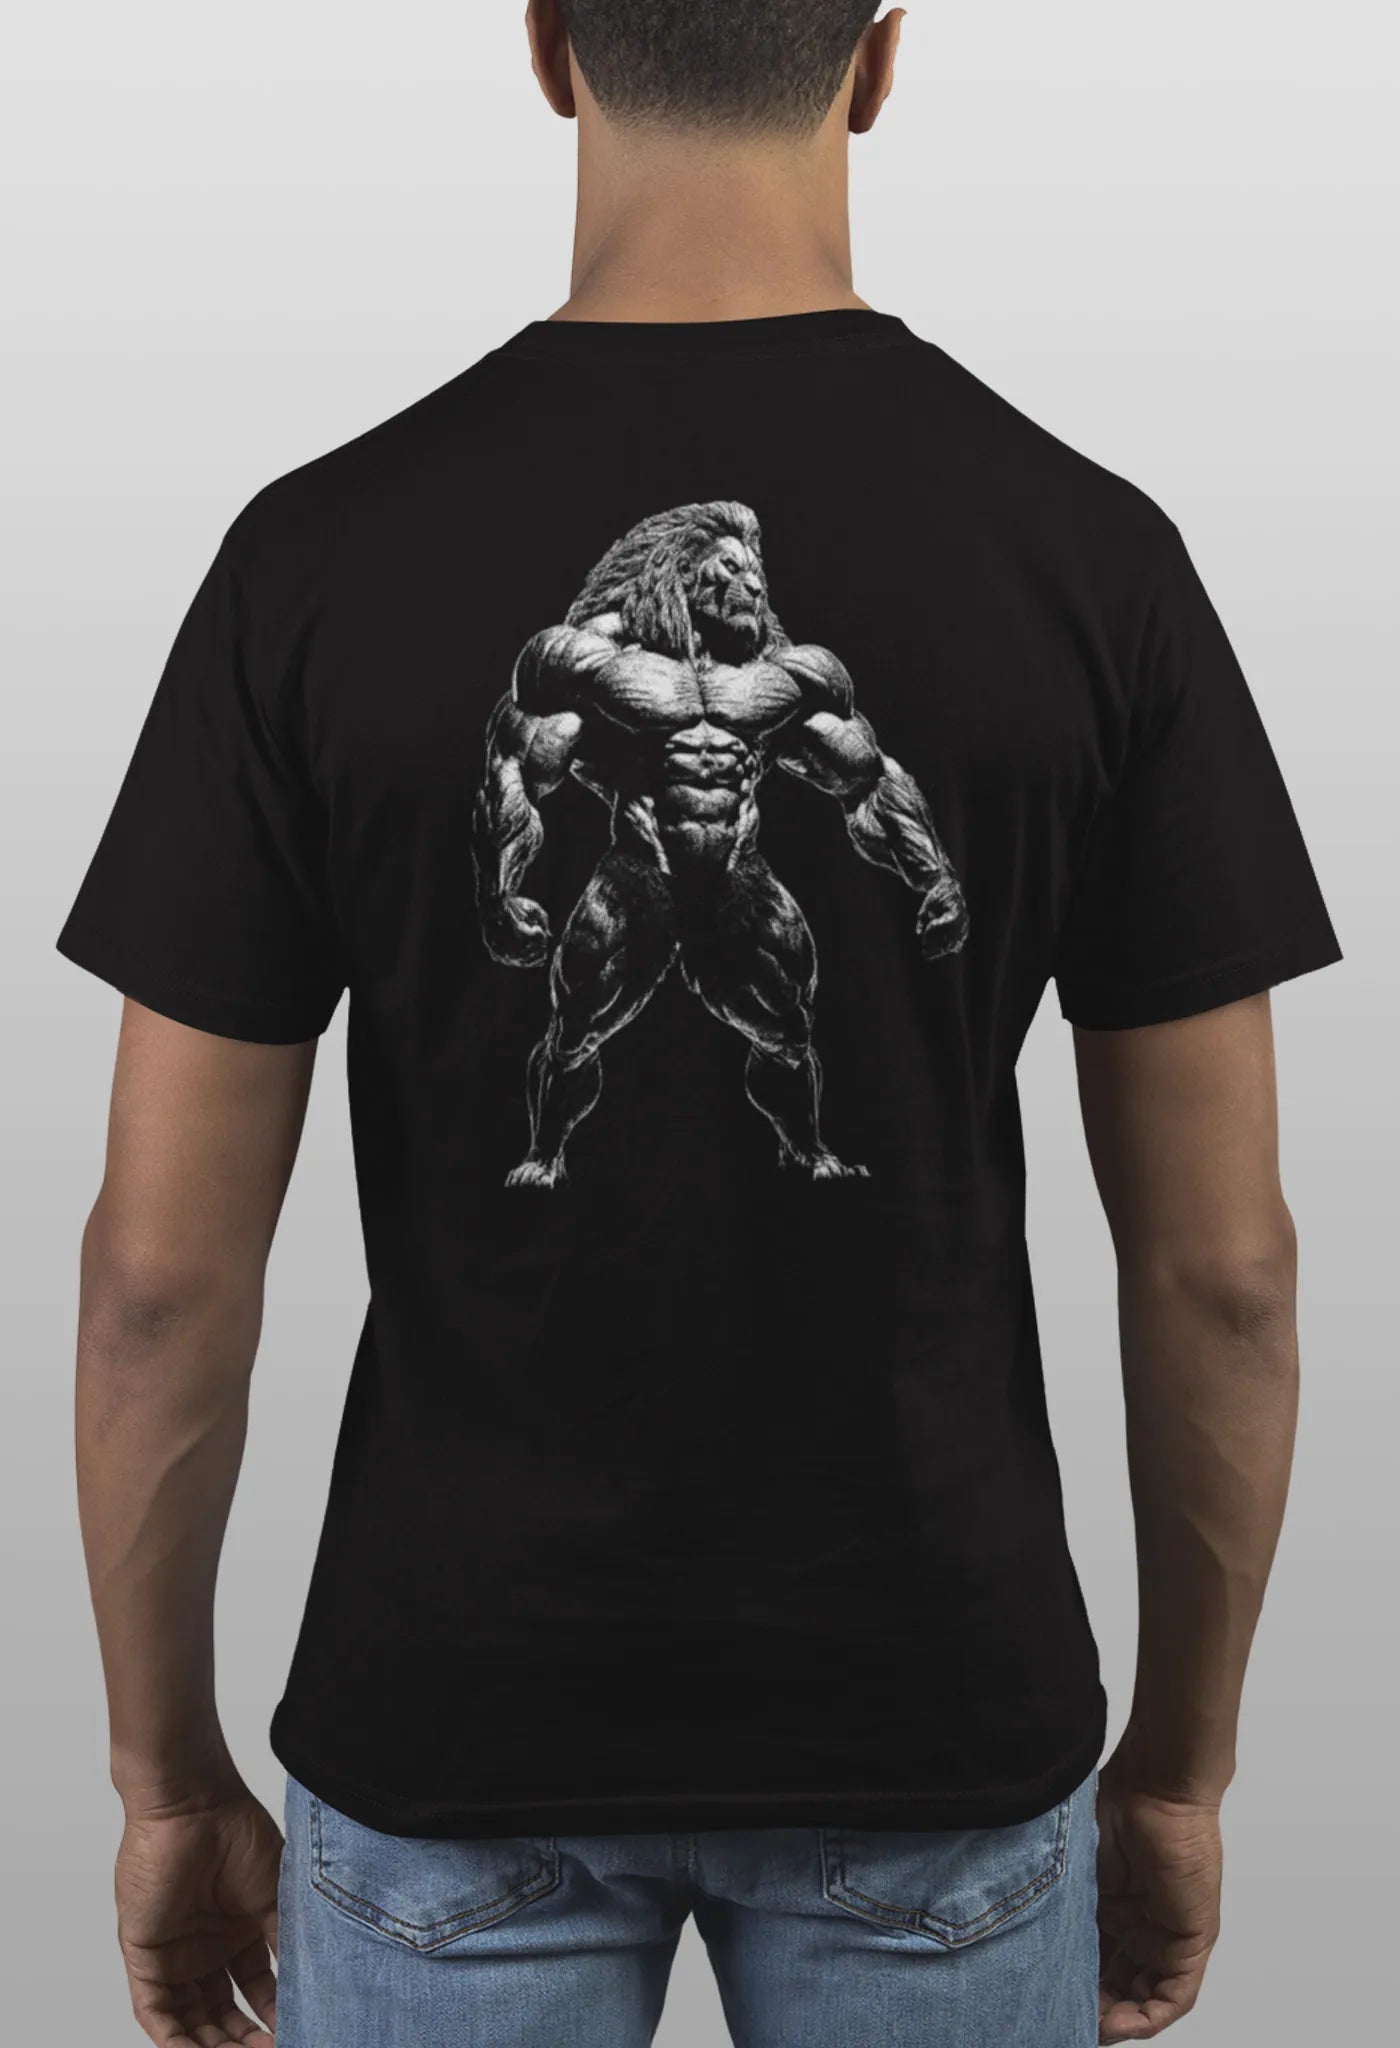 T-Shirt Gym Animal Lion Löwe Bodybuilding schwarz